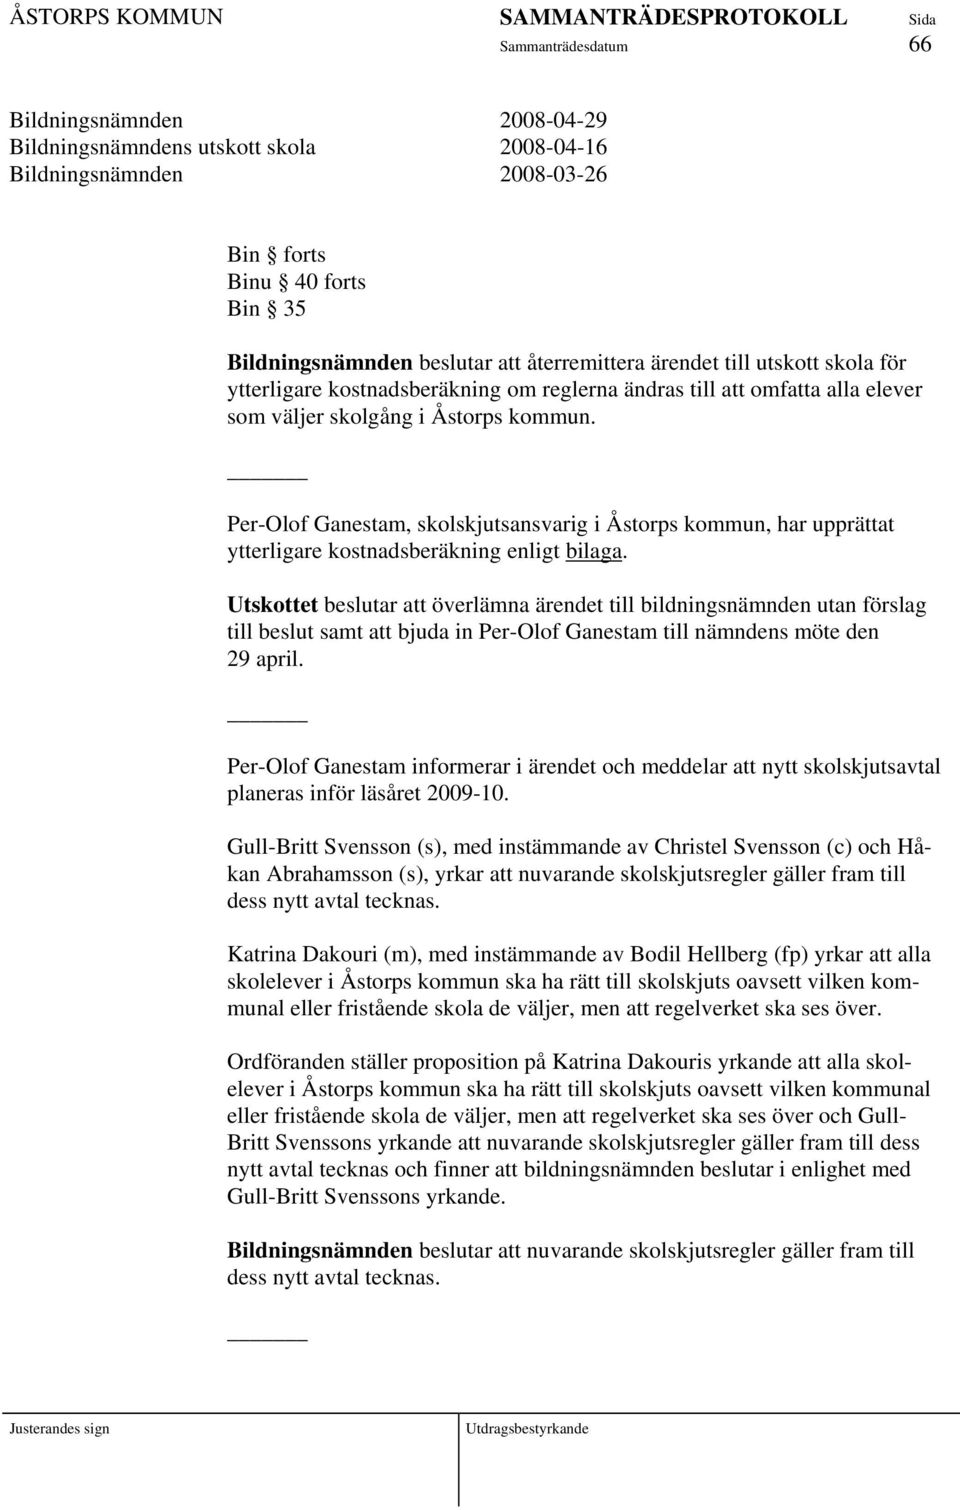 Per-Olof Ganestam, skolskjutsansvarig i Åstorps kommun, har upprättat ytterligare kostnadsberäkning enligt bilaga.